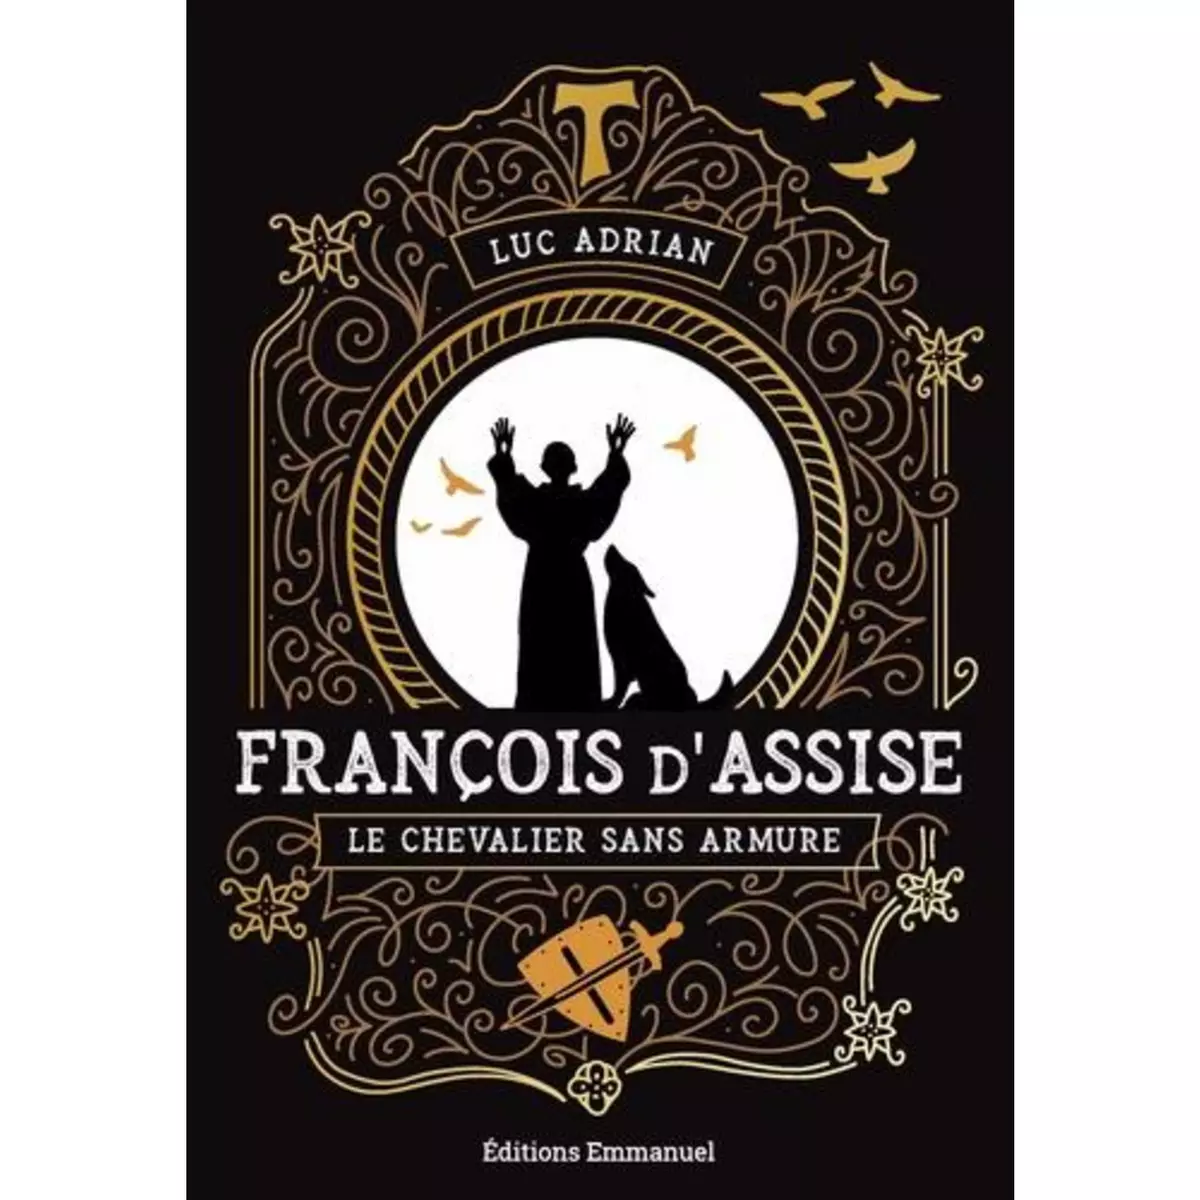  FRANCOIS D'ASSISE. LE CHEVALIER SANS ARMURE, Adrian Luc